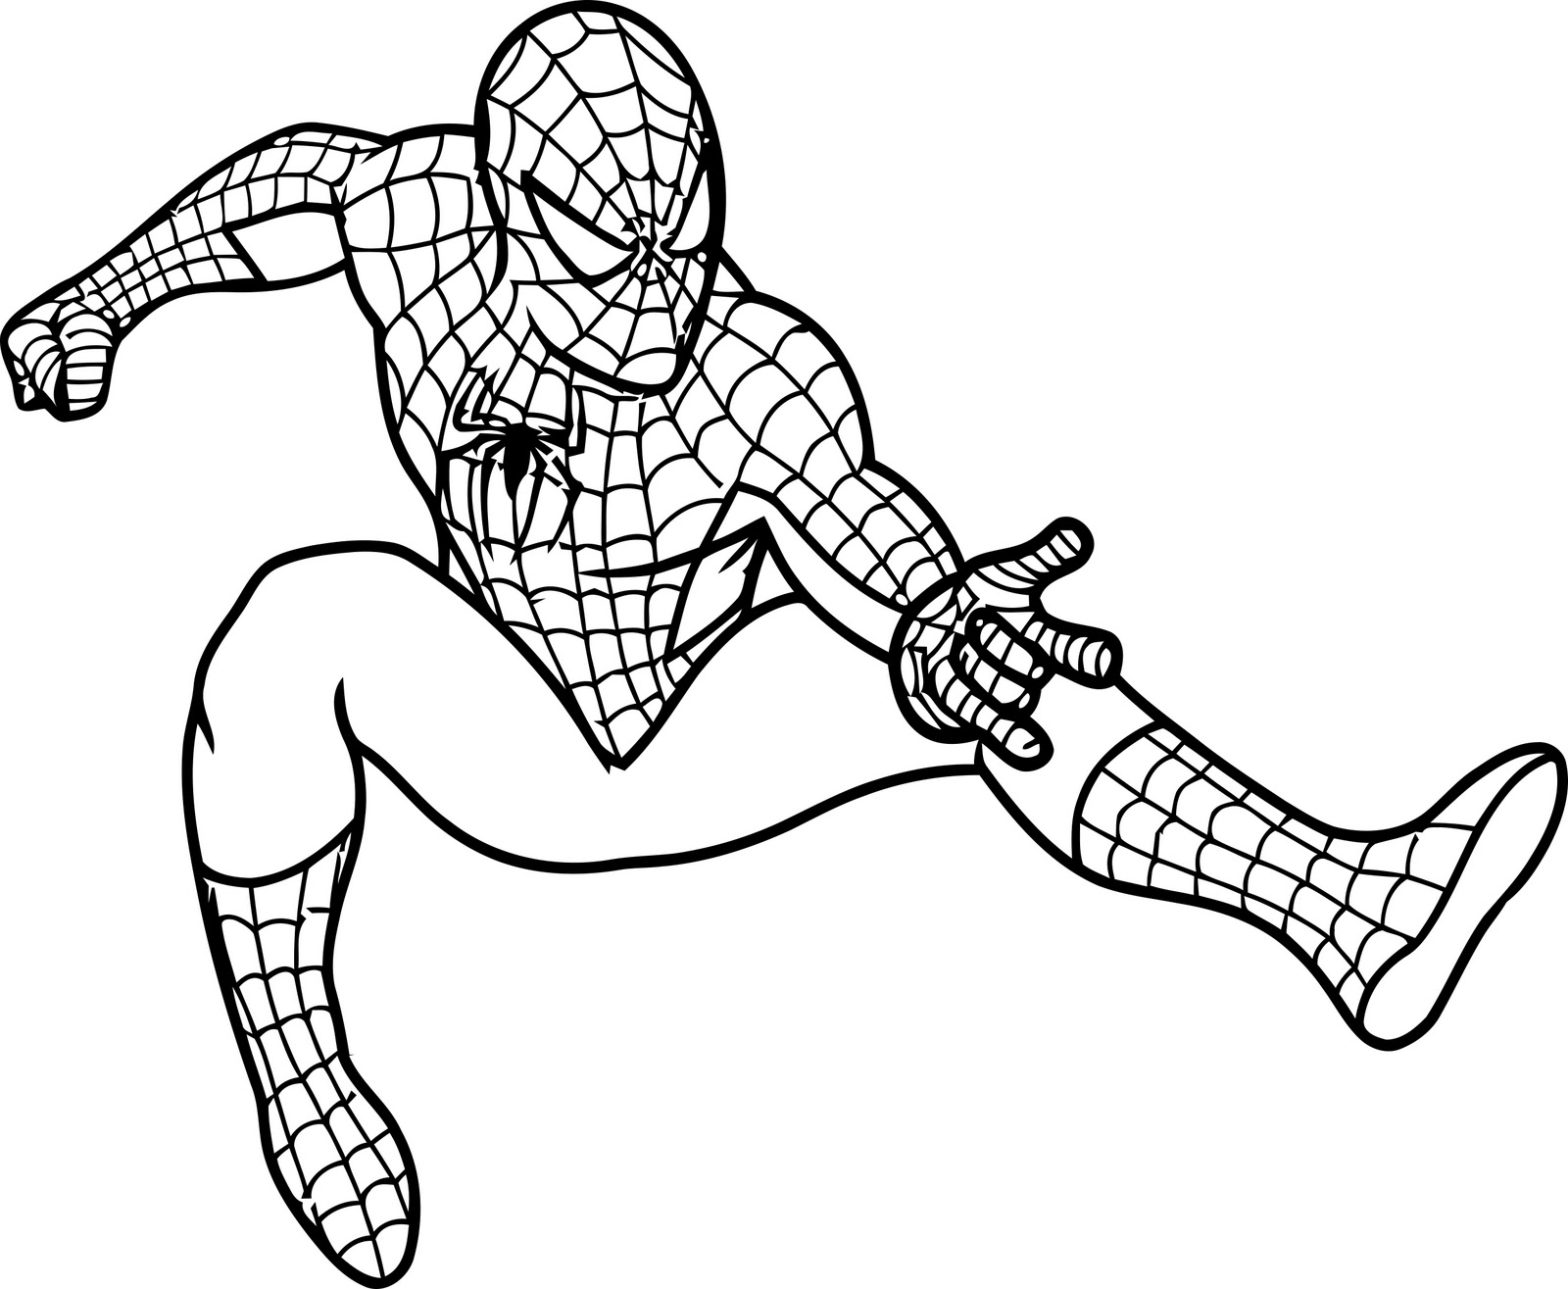 Раскраска Человек паук на белом фоне (супергерой)